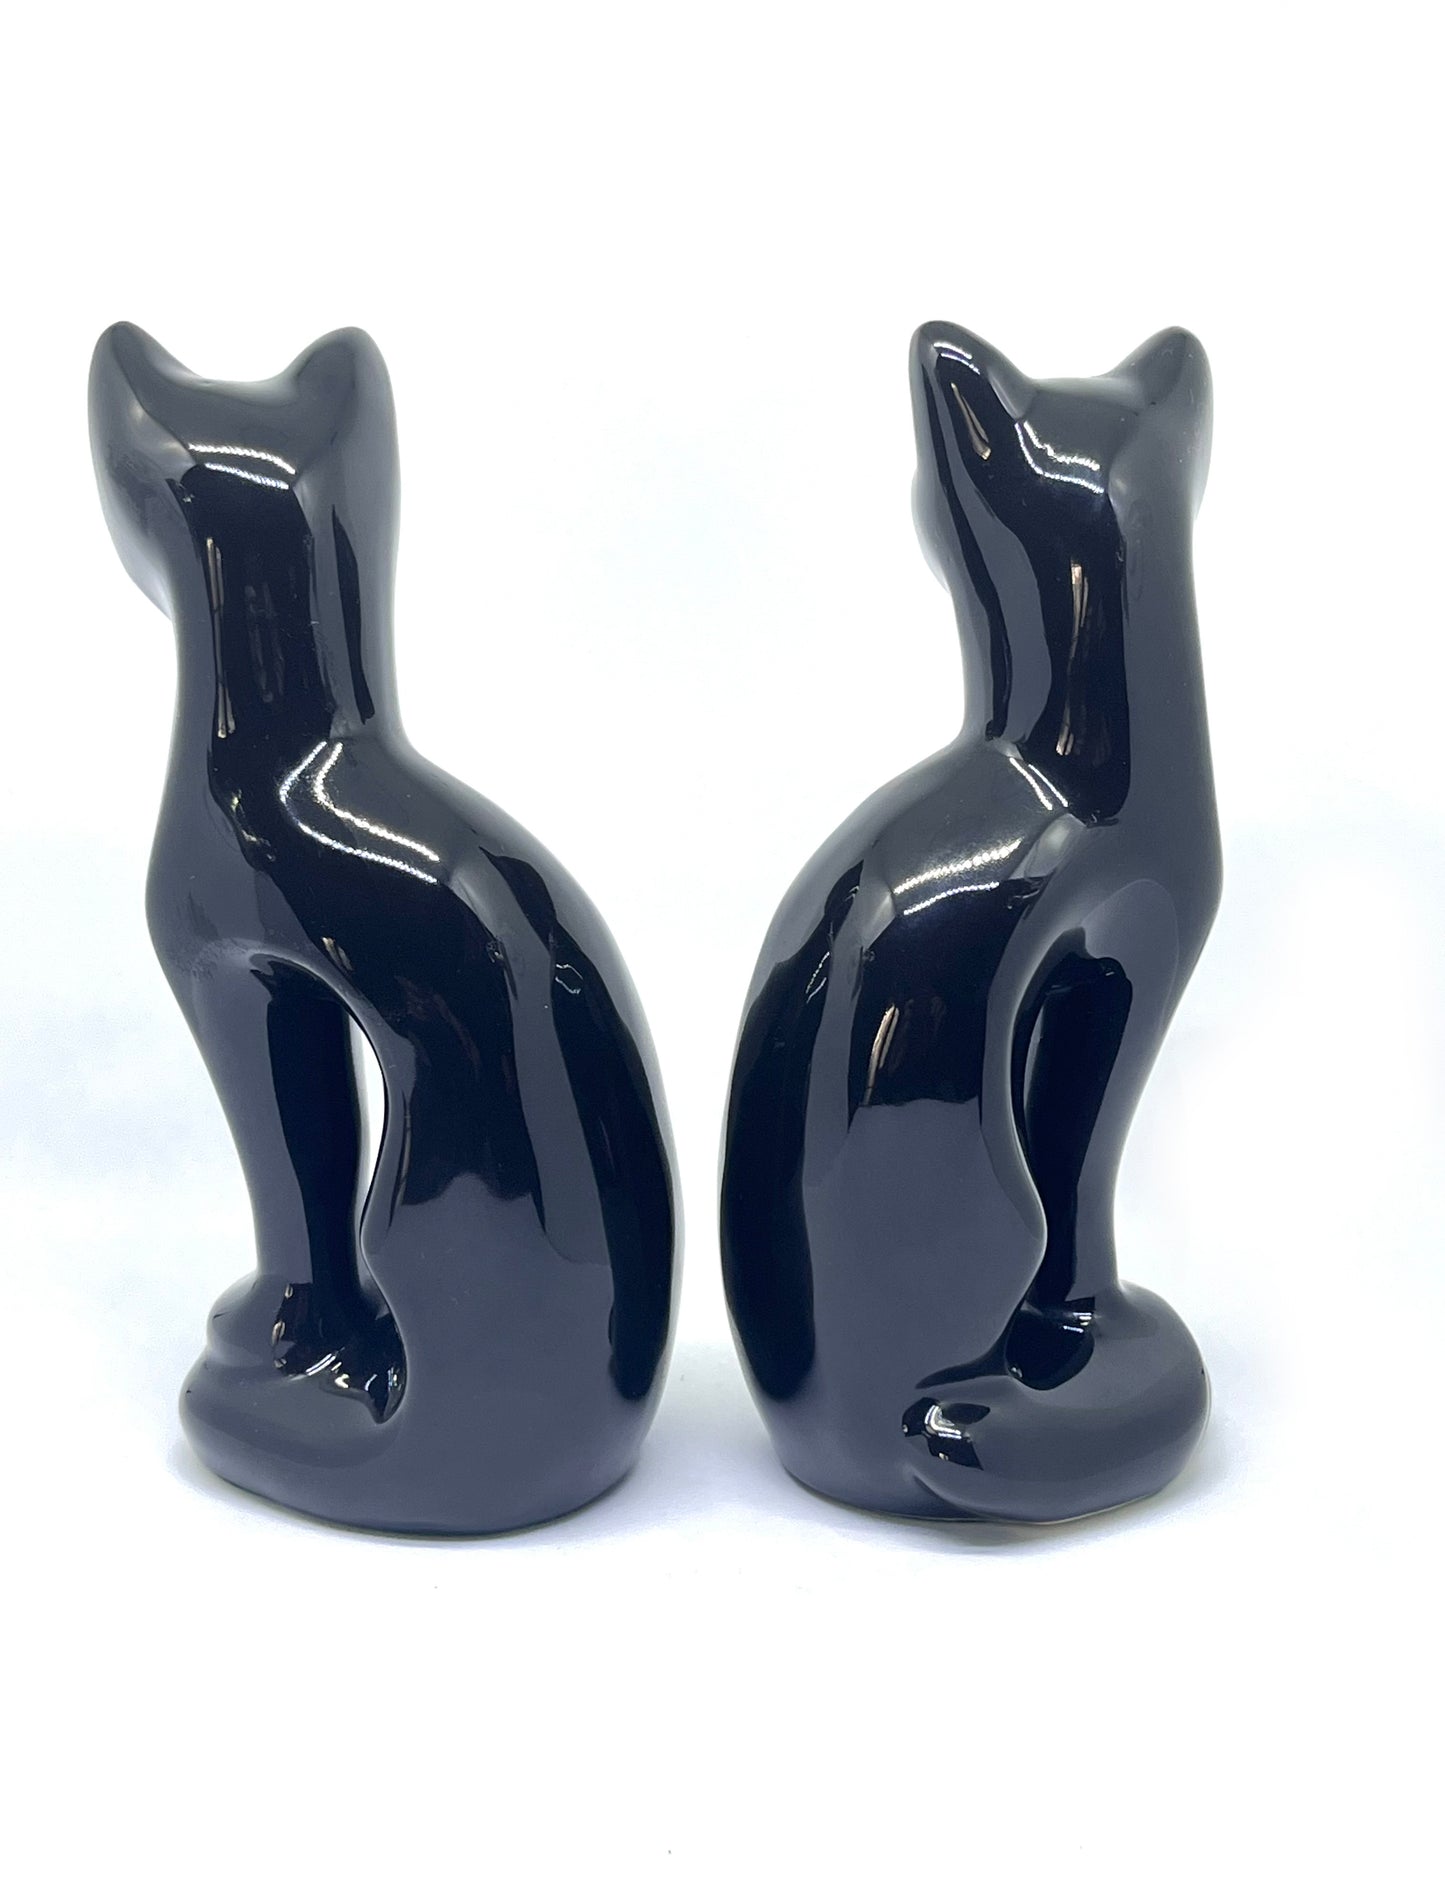 Twin Copperart 1980’s ceramic black Siamese cats